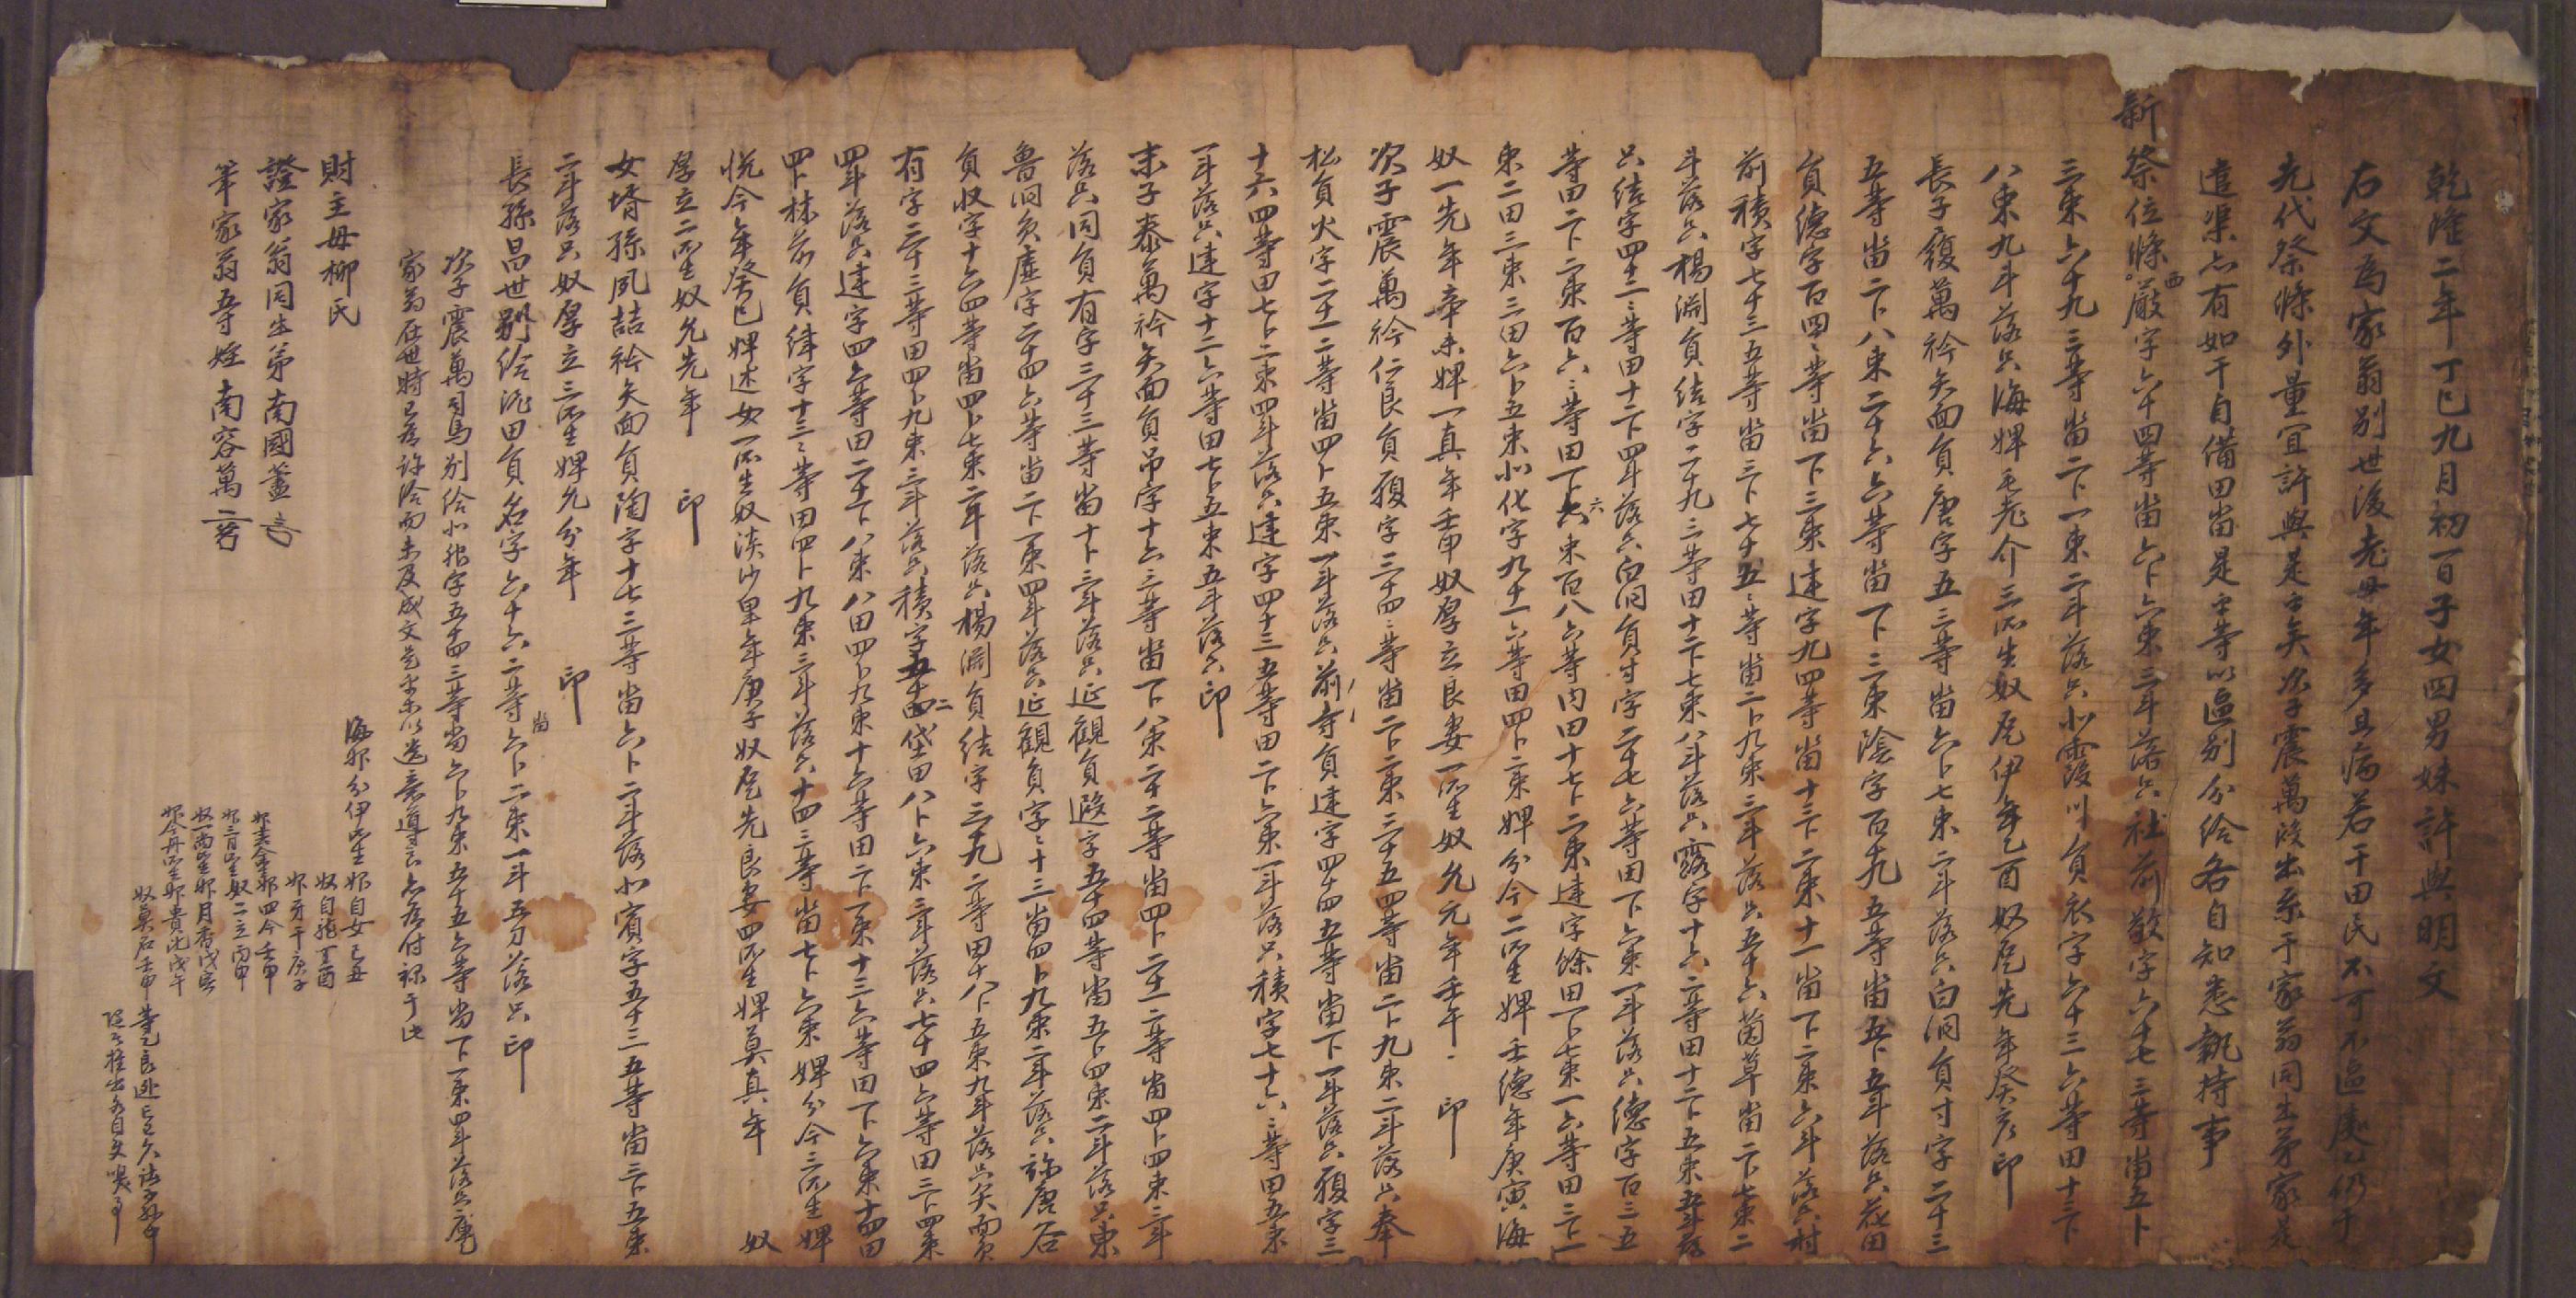 남국시처유씨(南國蓍妻柳氏)가 1737년에 작성한 분급문기